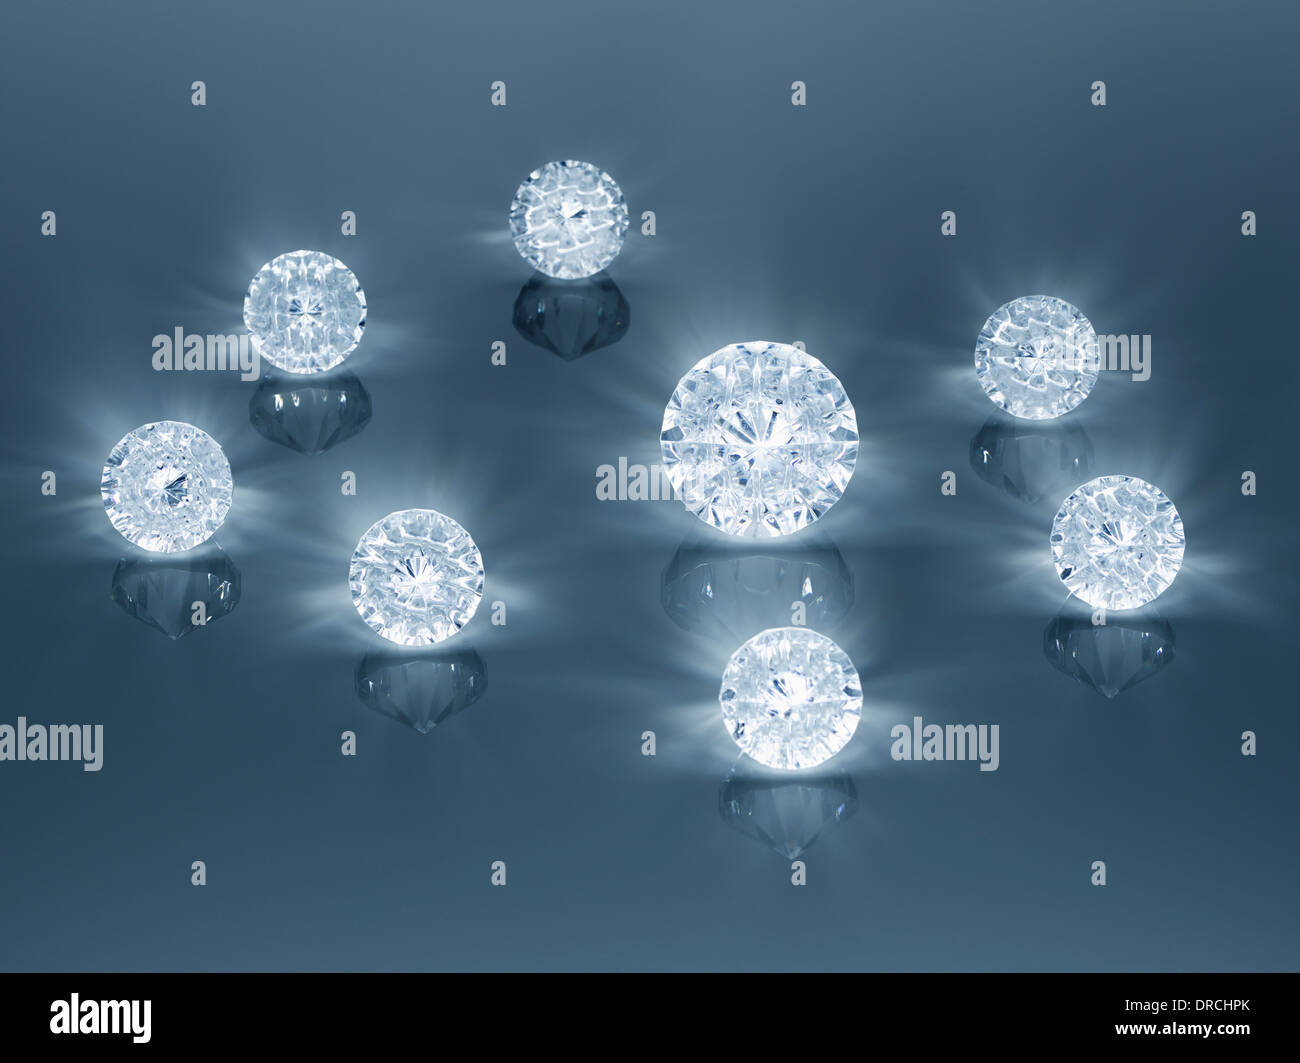 Close up de diamants Banque D'Images